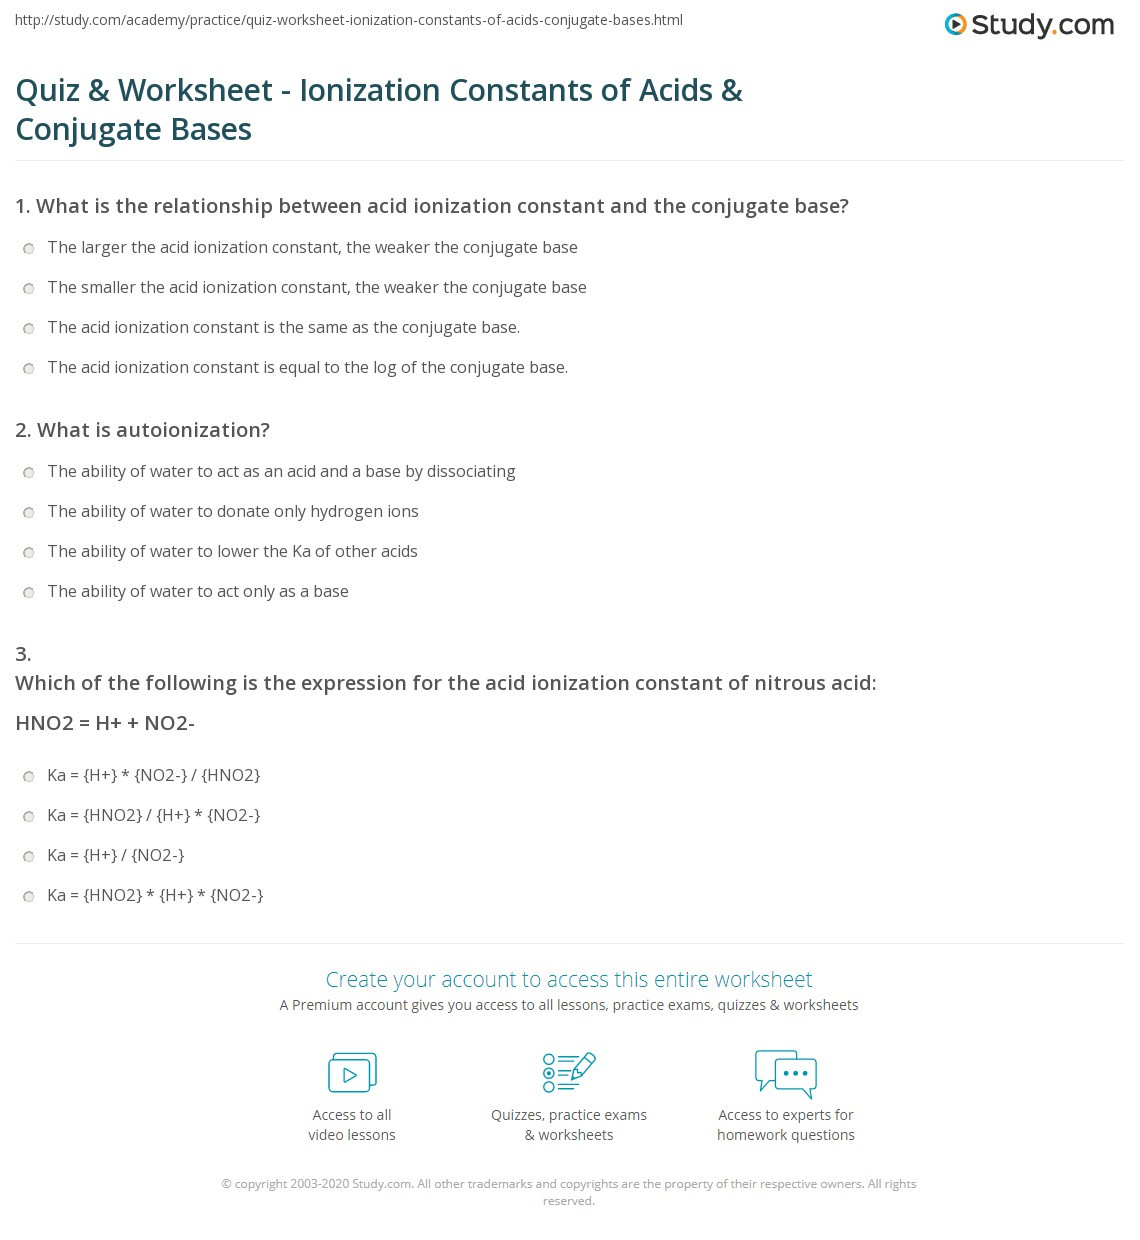 Acids and Bases Worksheet Quiz &amp; Worksheet Ionization Constants Of Acids &amp; Conjugate